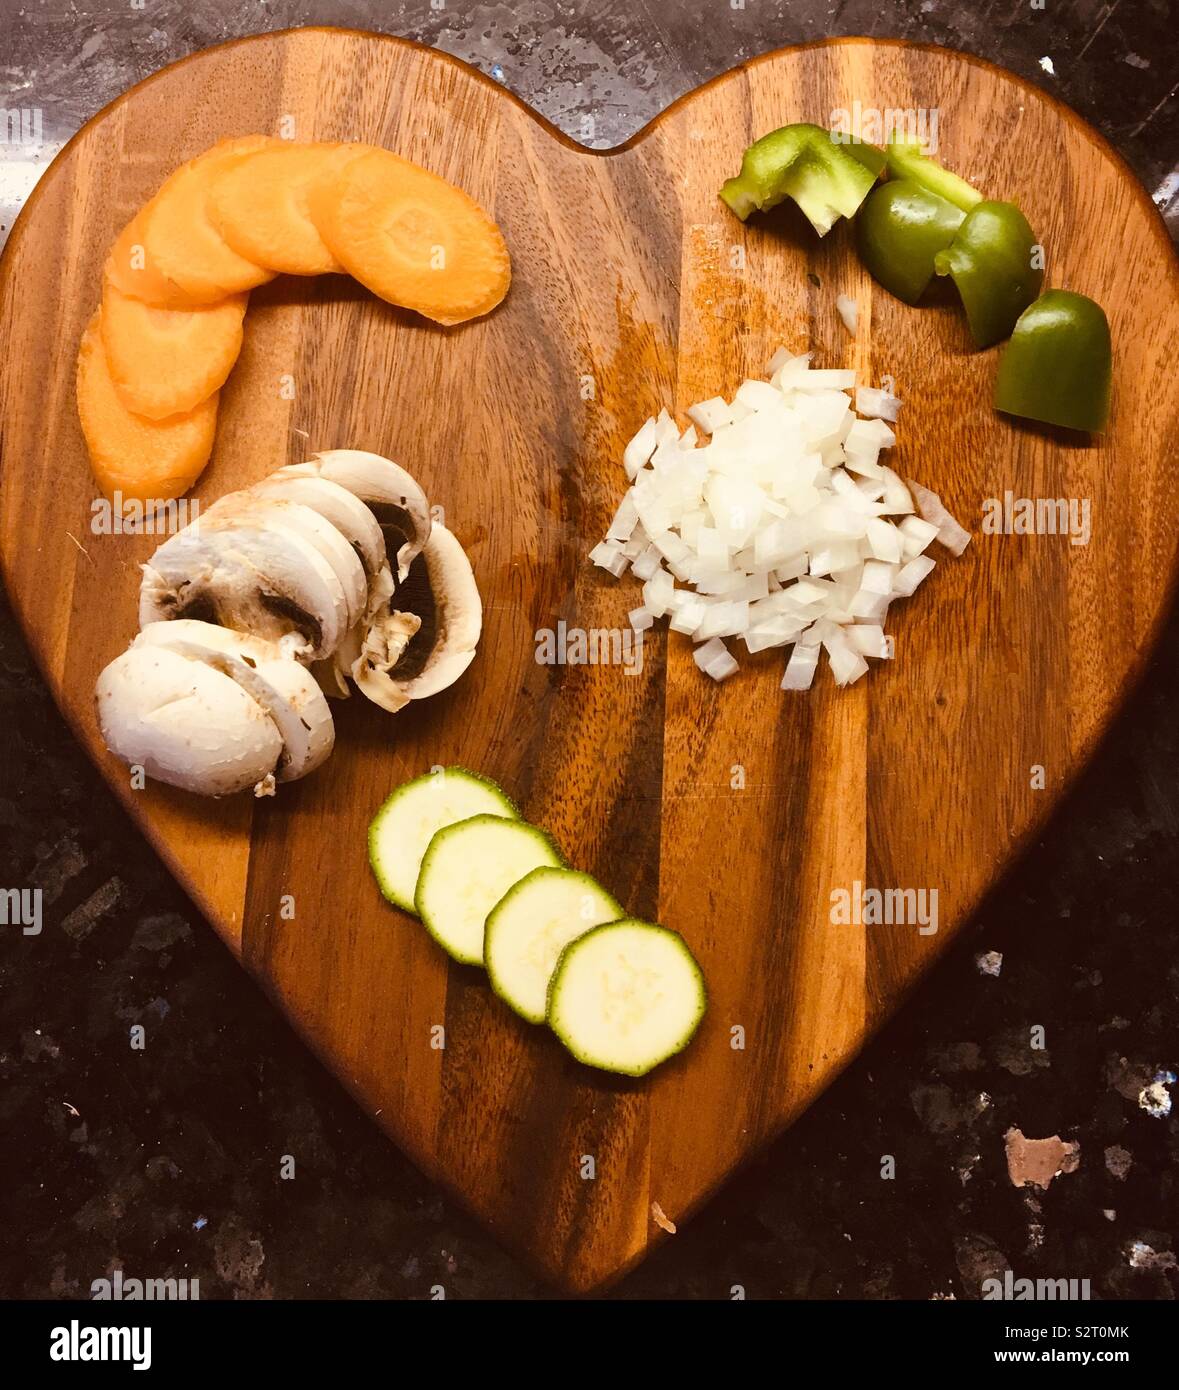 Obtención de mis cinco un día con calabacín picados, cebolla, champiñones, zanahoria y pimiento verde Foto de stock